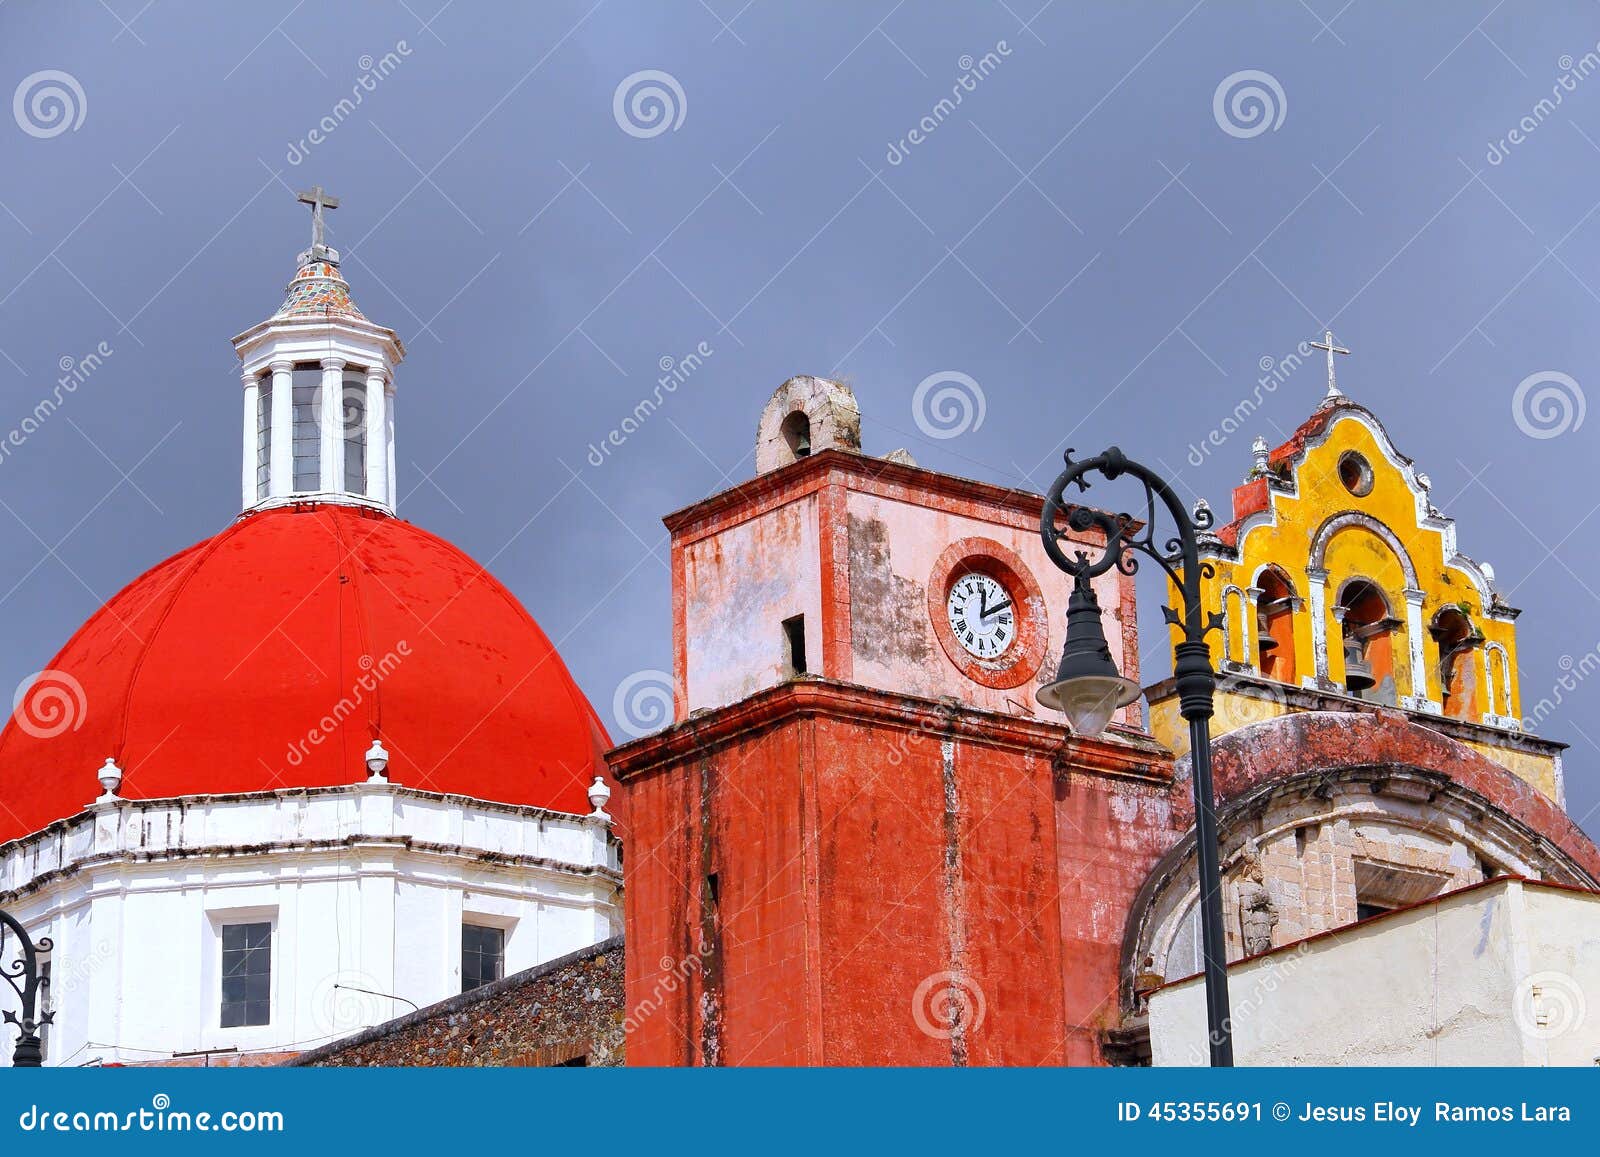 cuernavaca cathedral in morelos iv